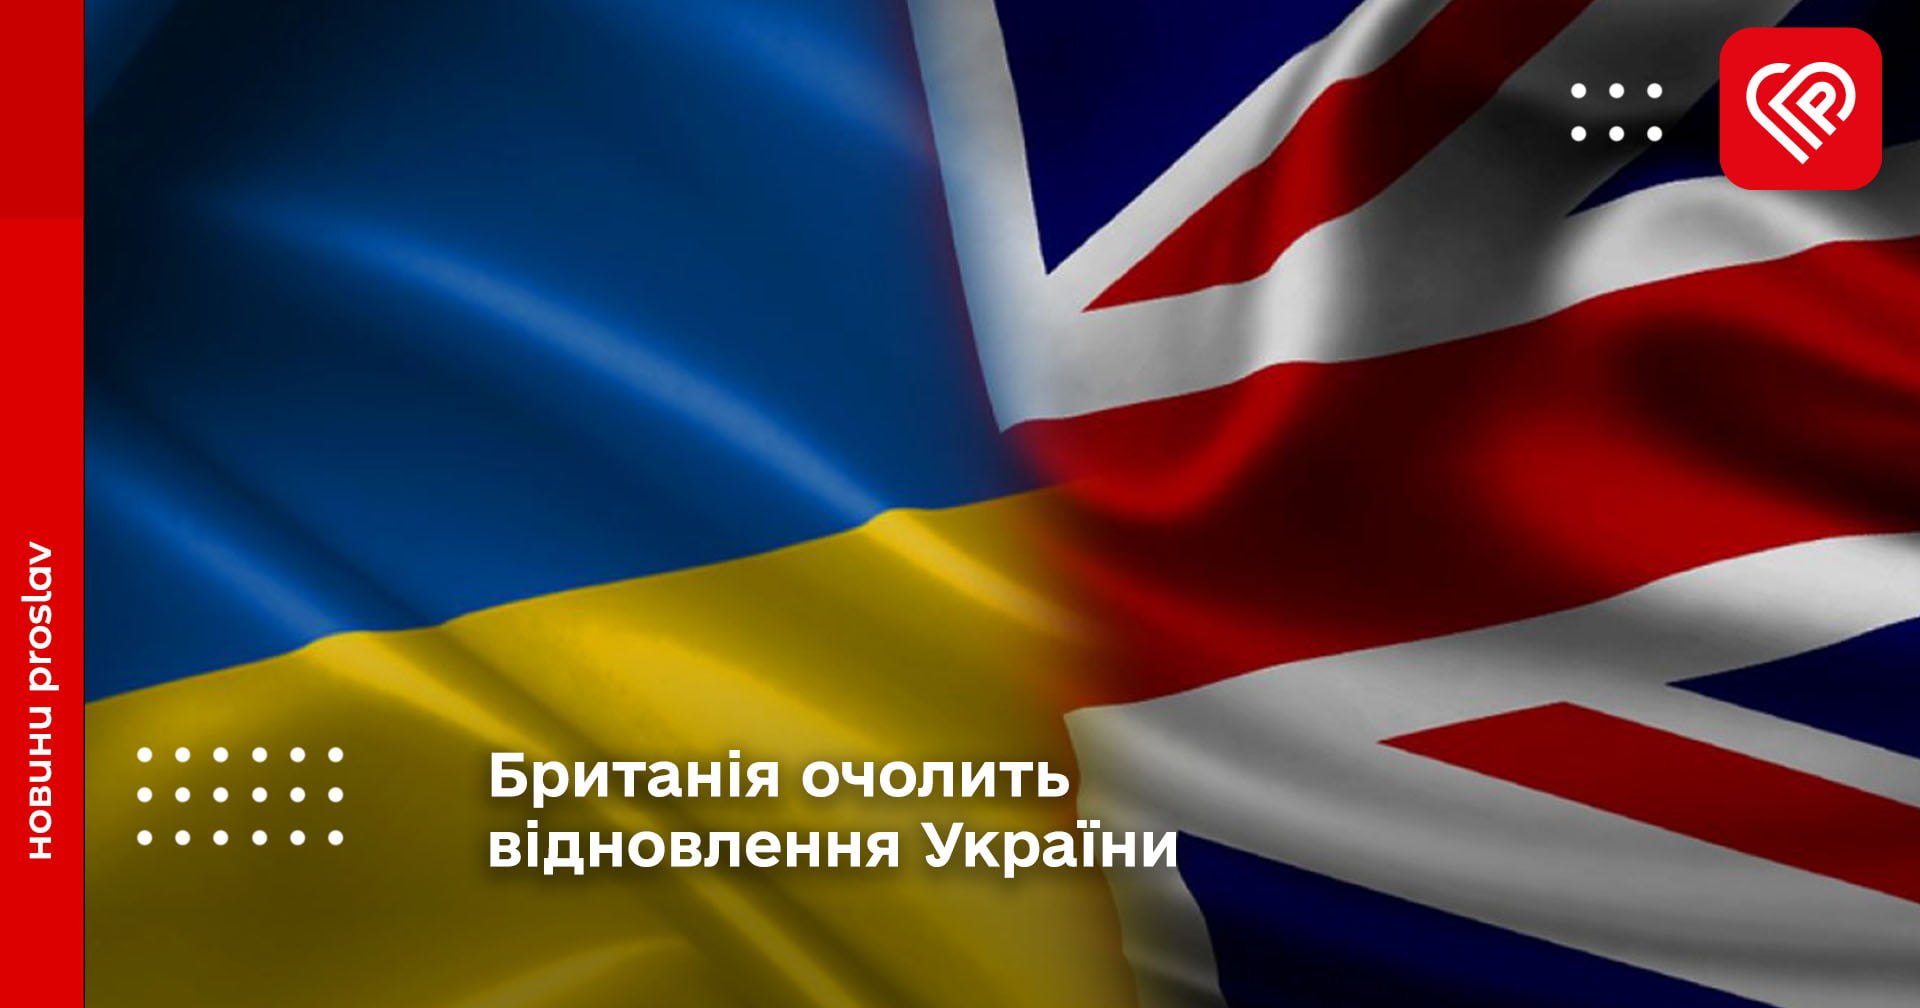 Британія очолить відновлення України